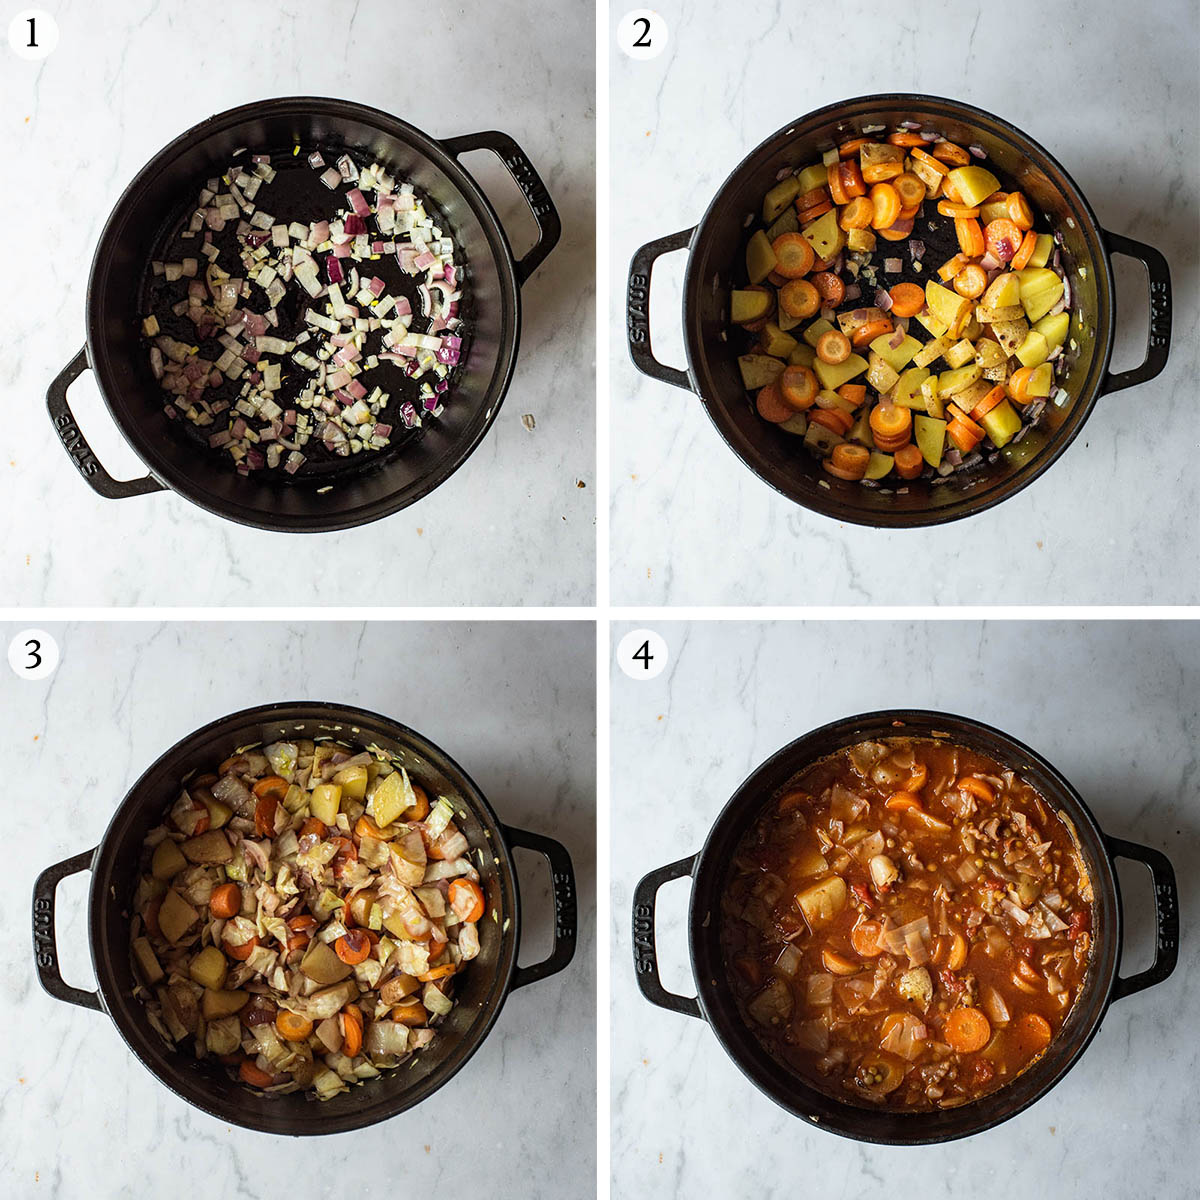 Cabbage lentil soup steps 1 to 4.